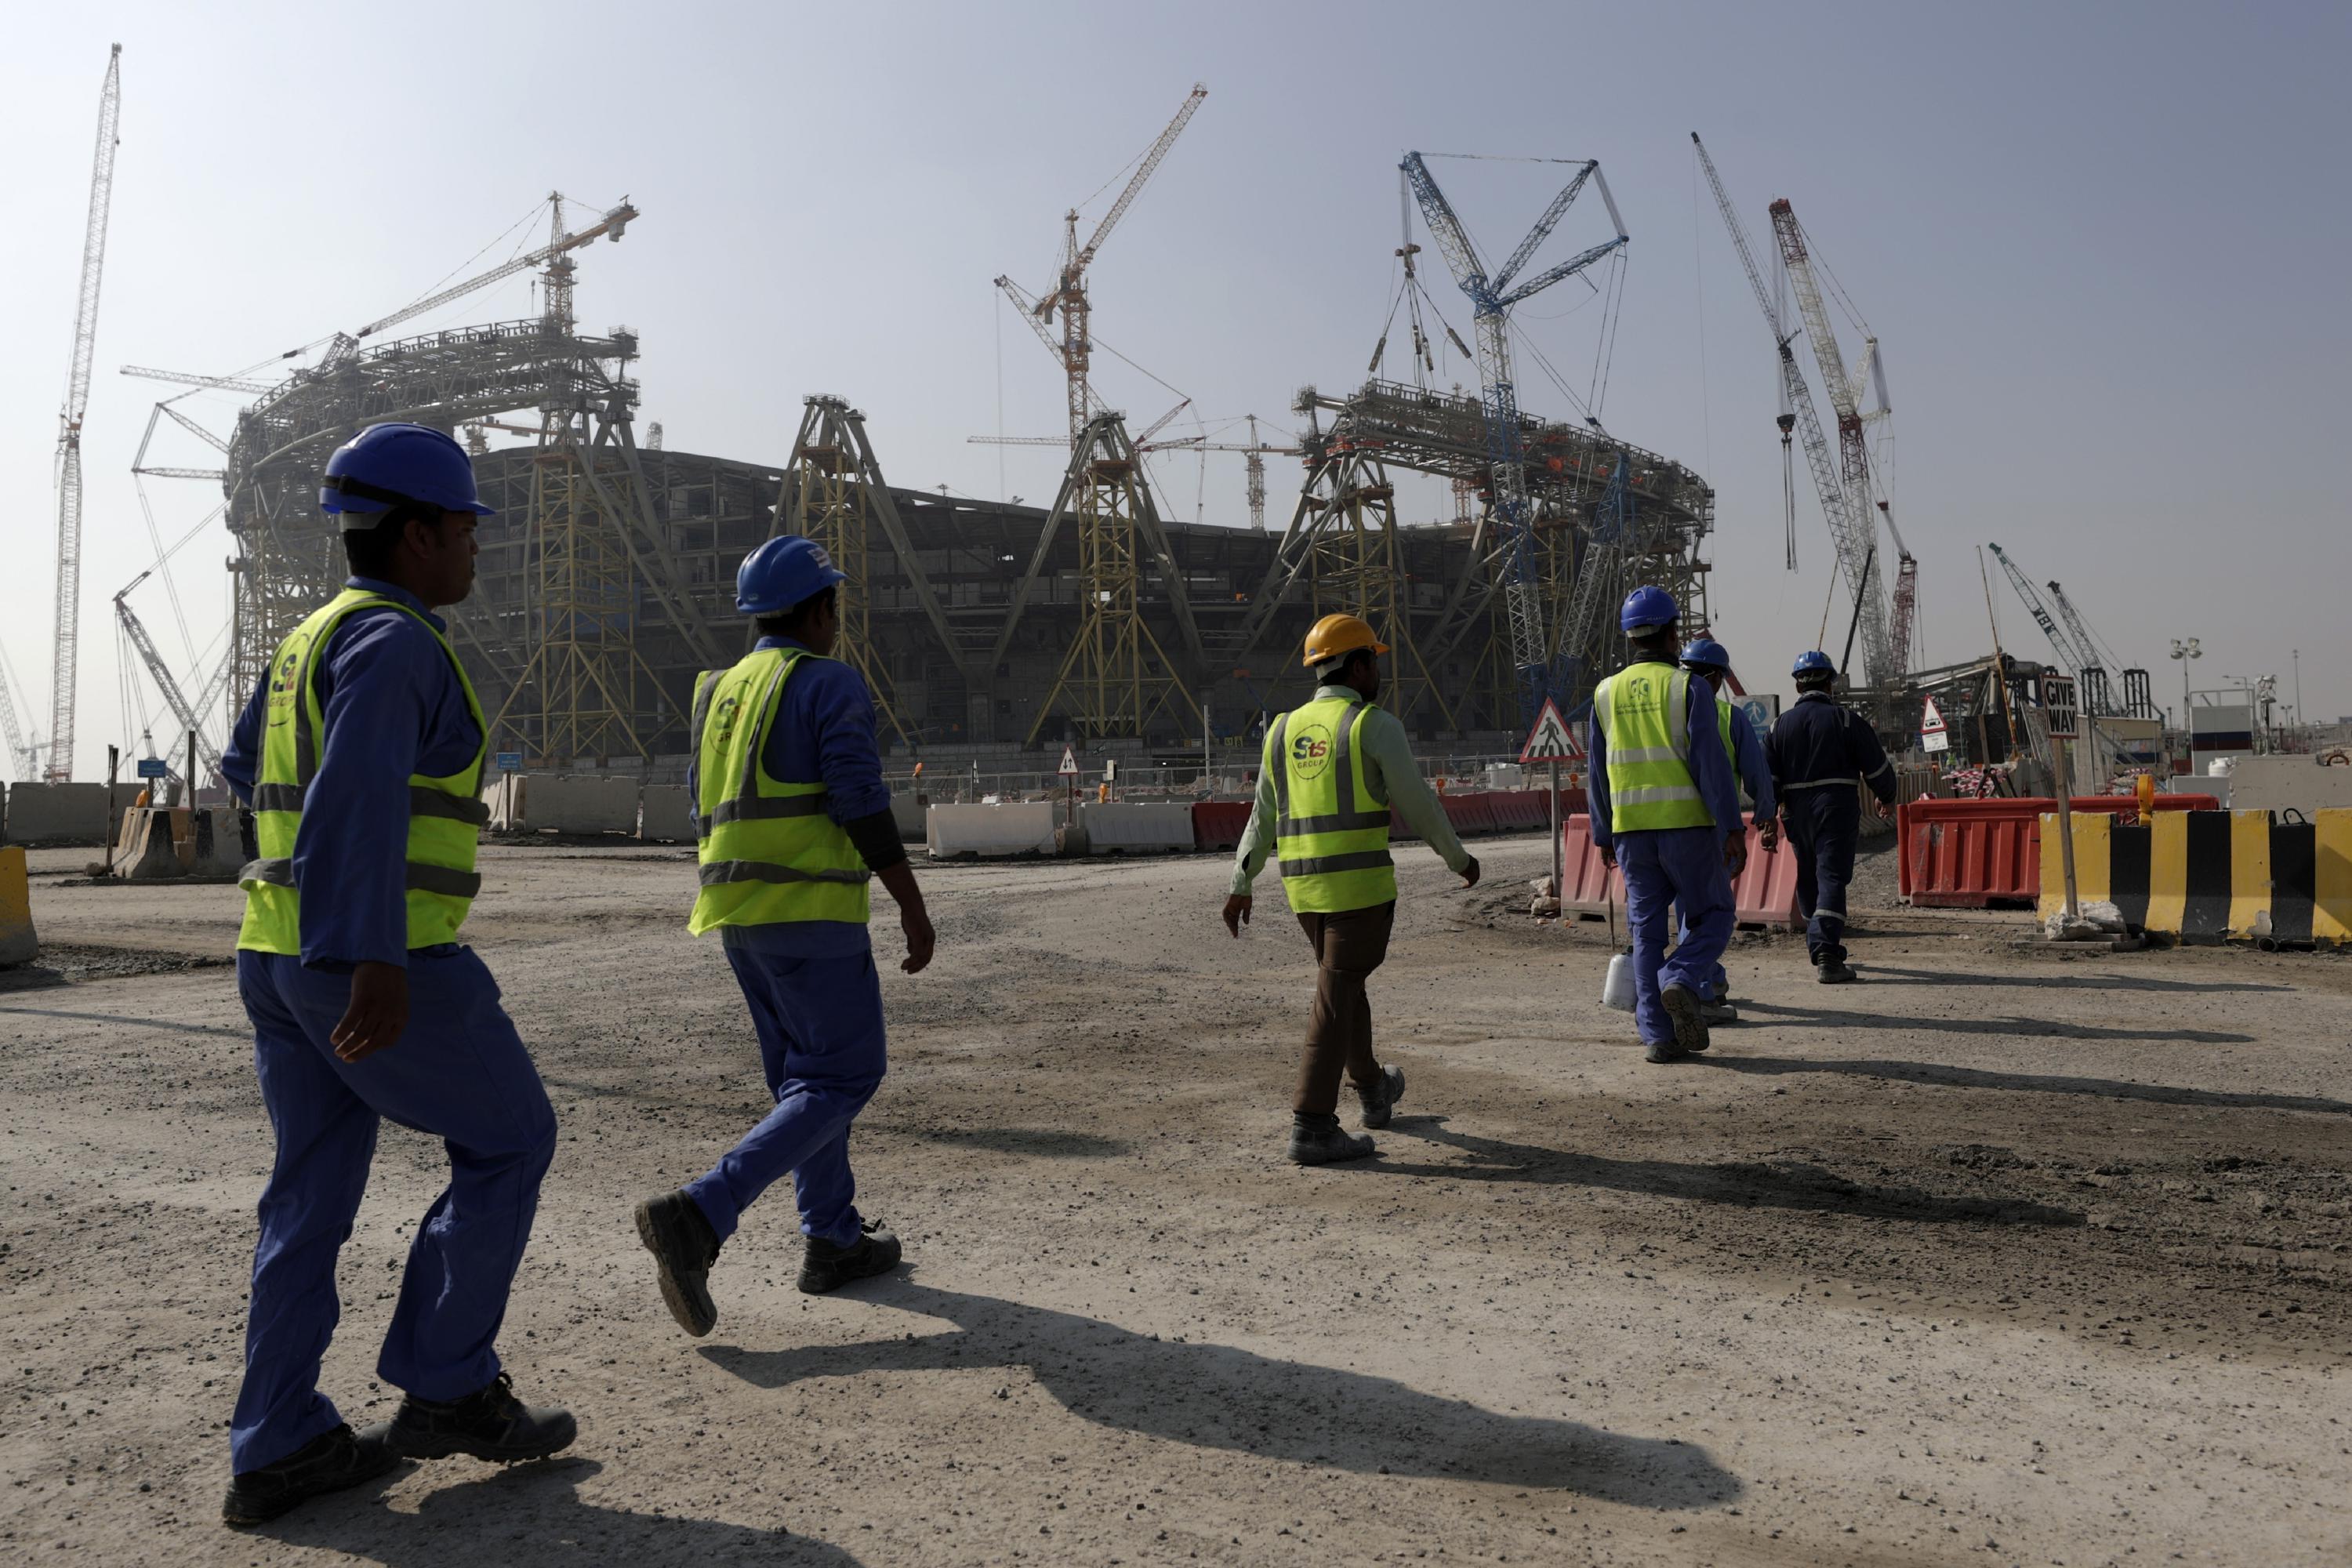 Katari e pranon: Më shumë se 400 punëtorë kanë vdekur gjatë ndërtimeve për stadiumet